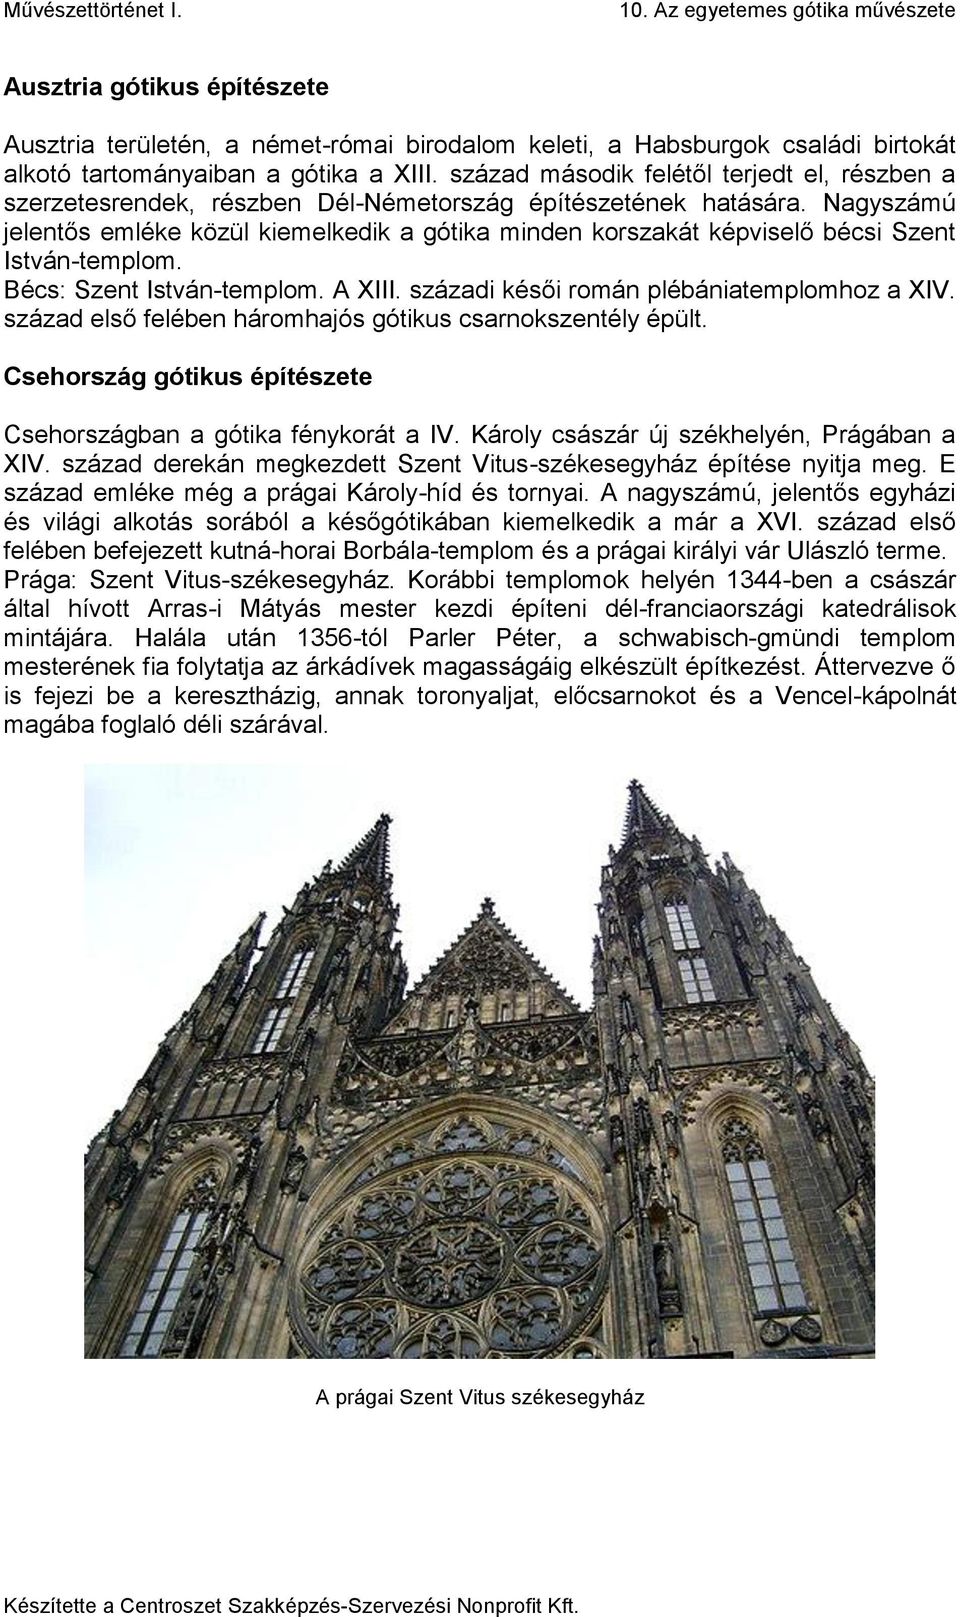 Nagyszámú jelentős emléke közül kiemelkedik a gótika minden korszakát képviselő bécsi Szent István-templom. Bécs: Szent István-templom. A XIII. századi késői román plébániatemplomhoz a XIV.